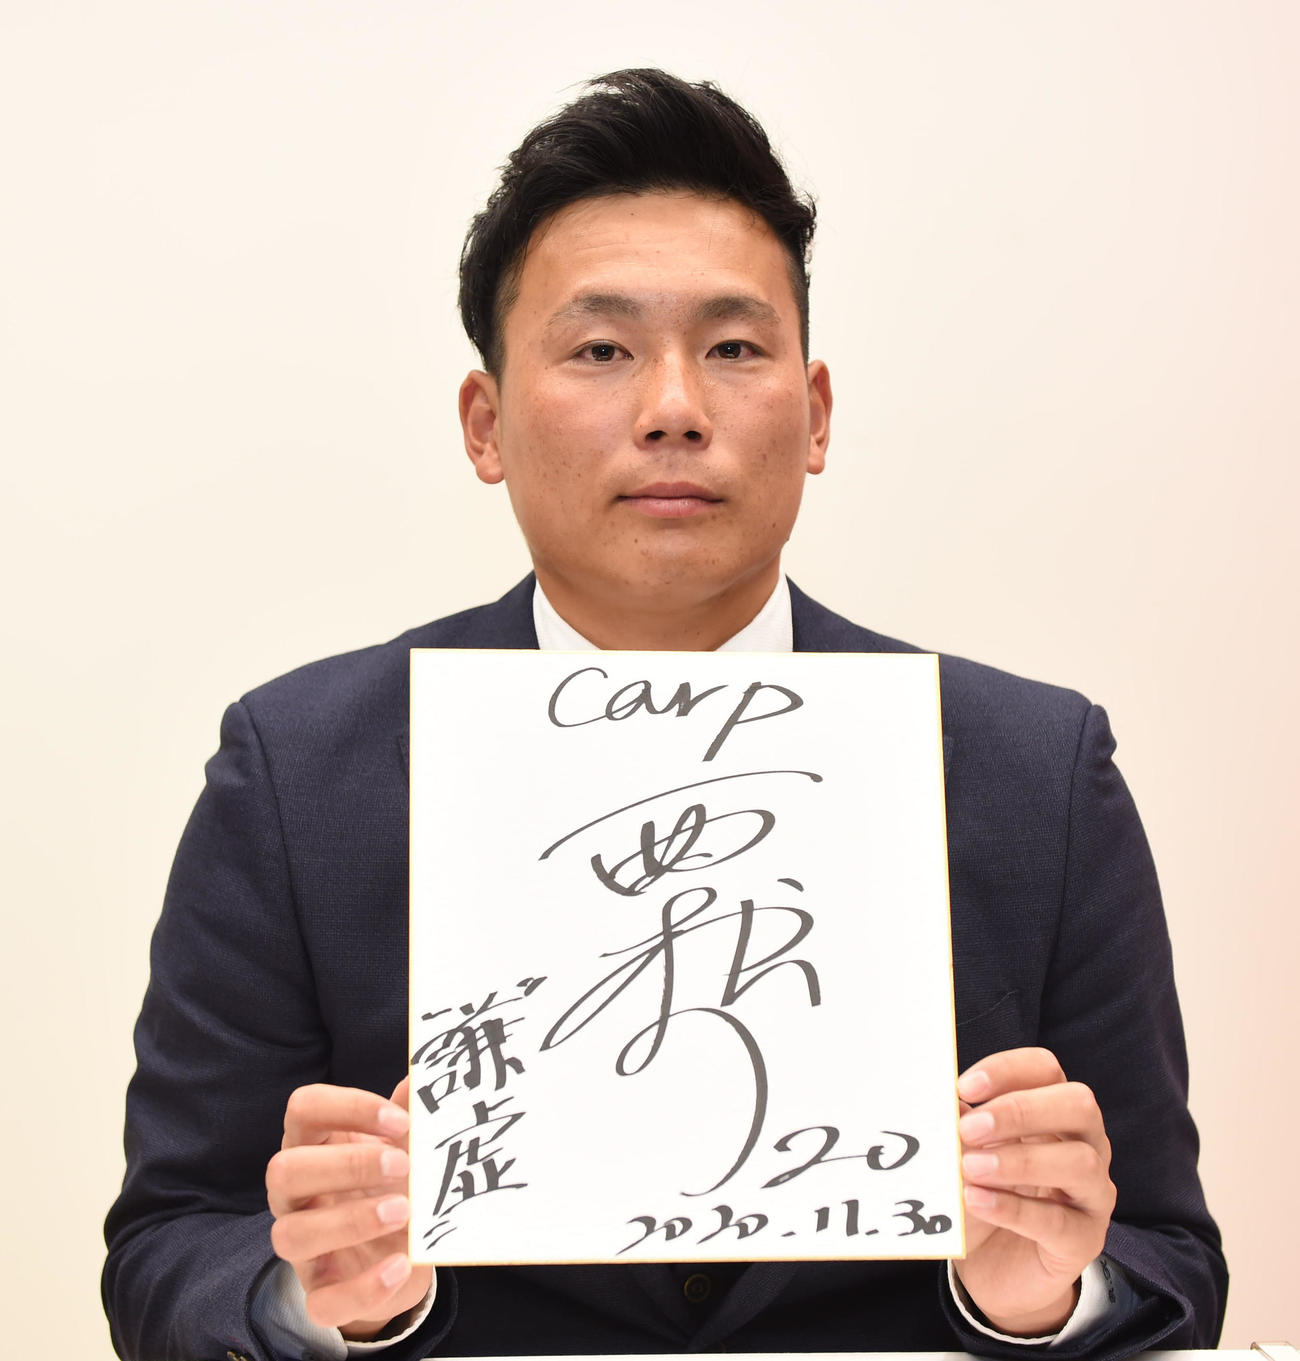 広島と仮契約を済ませた栗林は、色紙に背番号「20」と「謙虚」を書き込む（2020年11月30日）